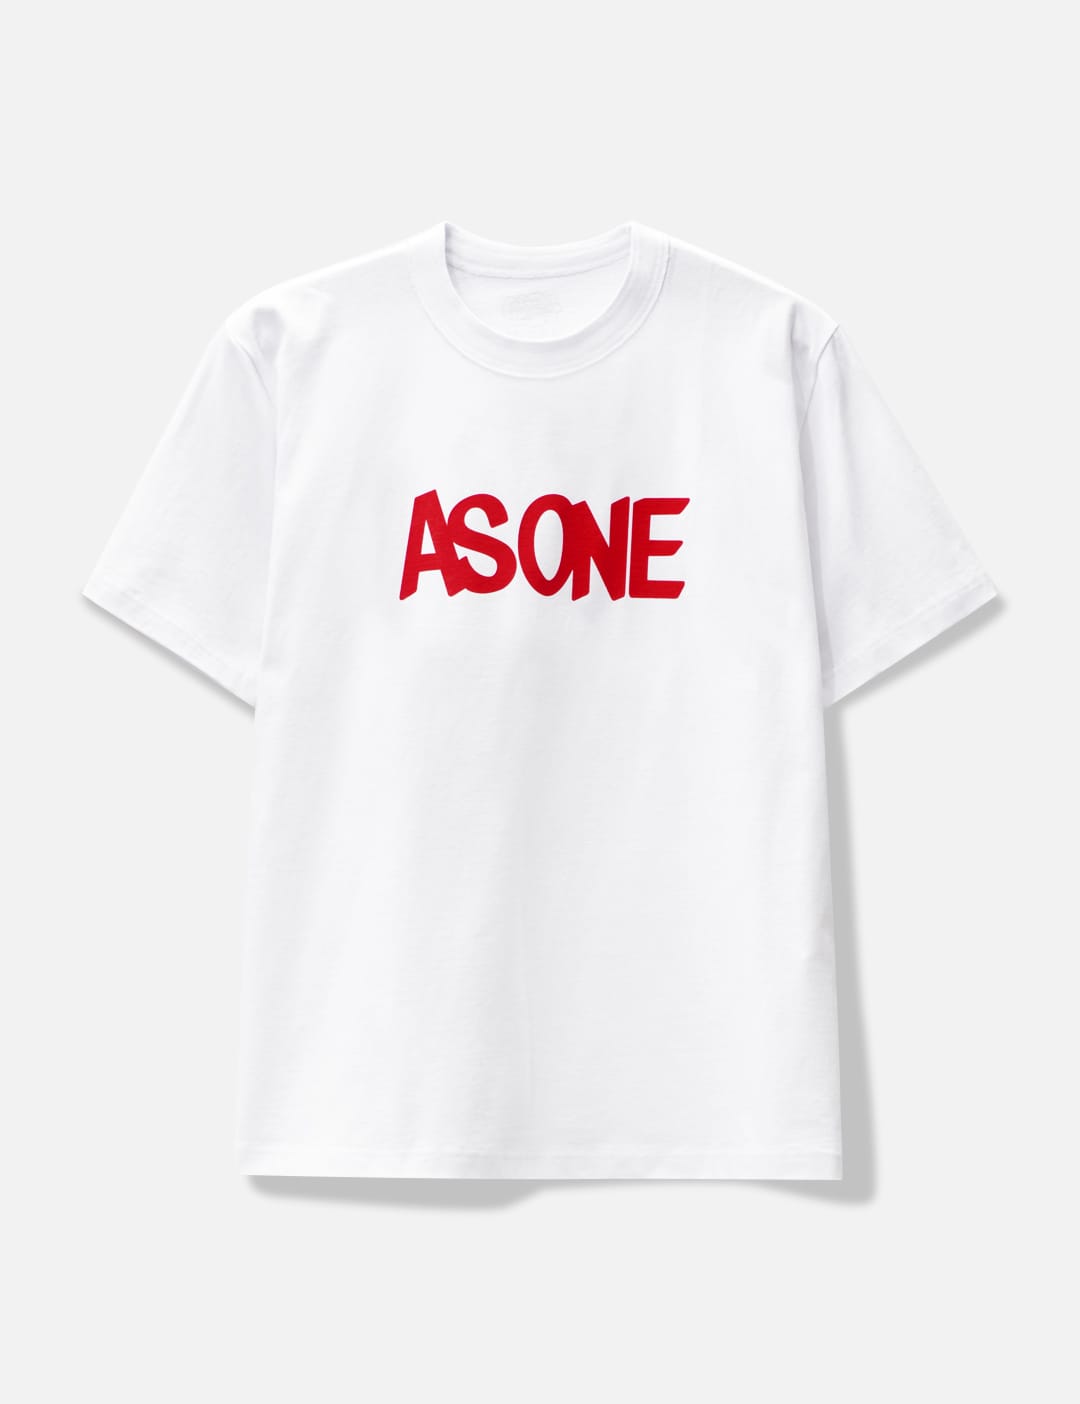 Sacai x Eric Haze As One T-shirt